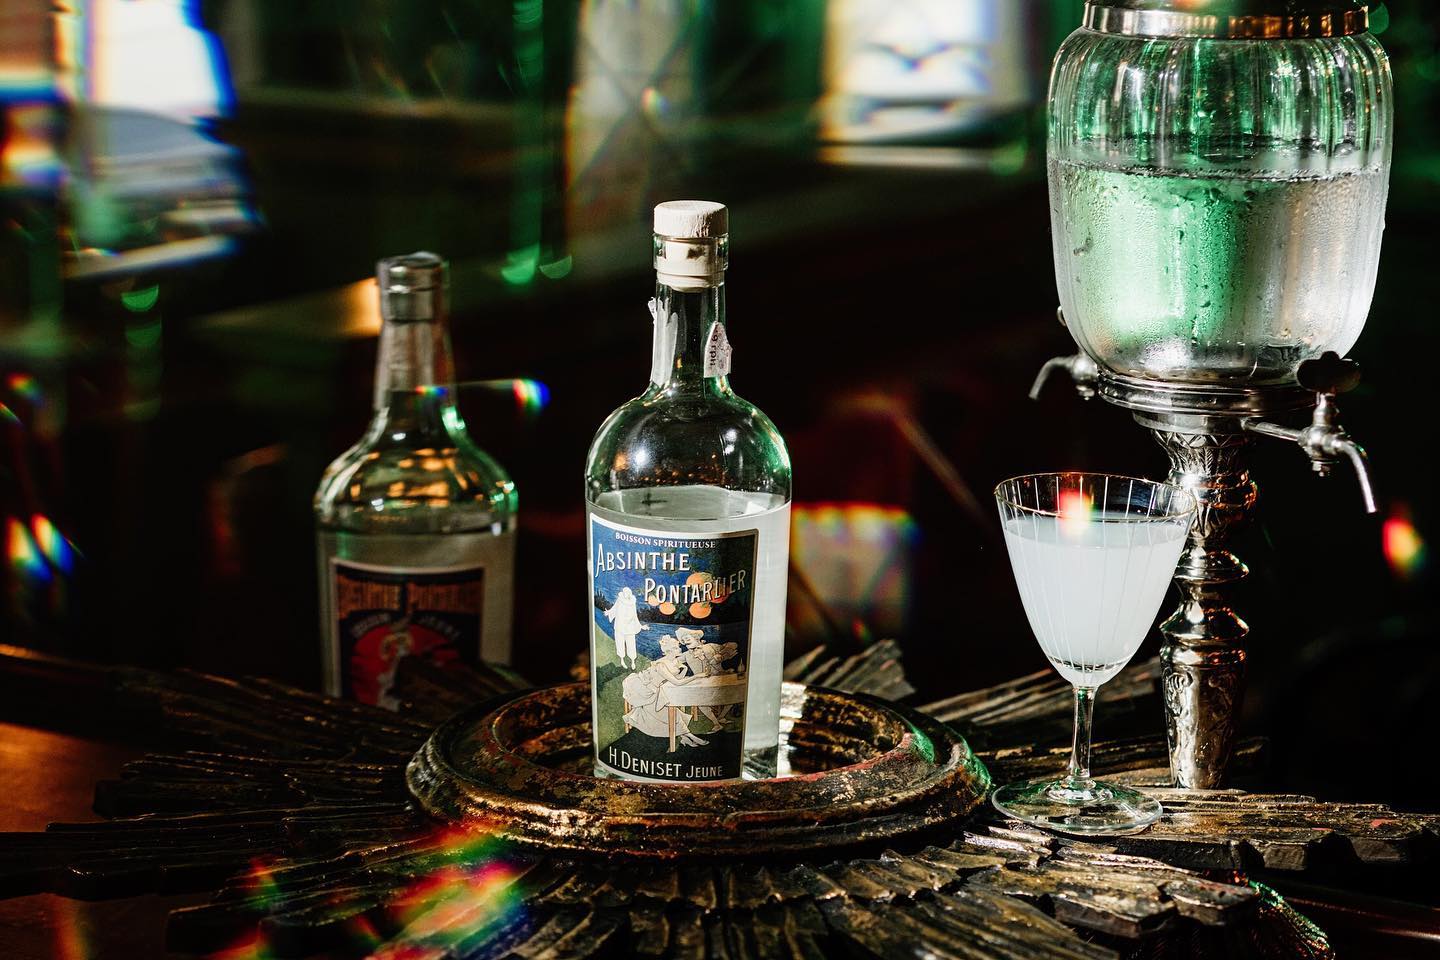 ZELDA BAR - First absinthe bar in Ukraine